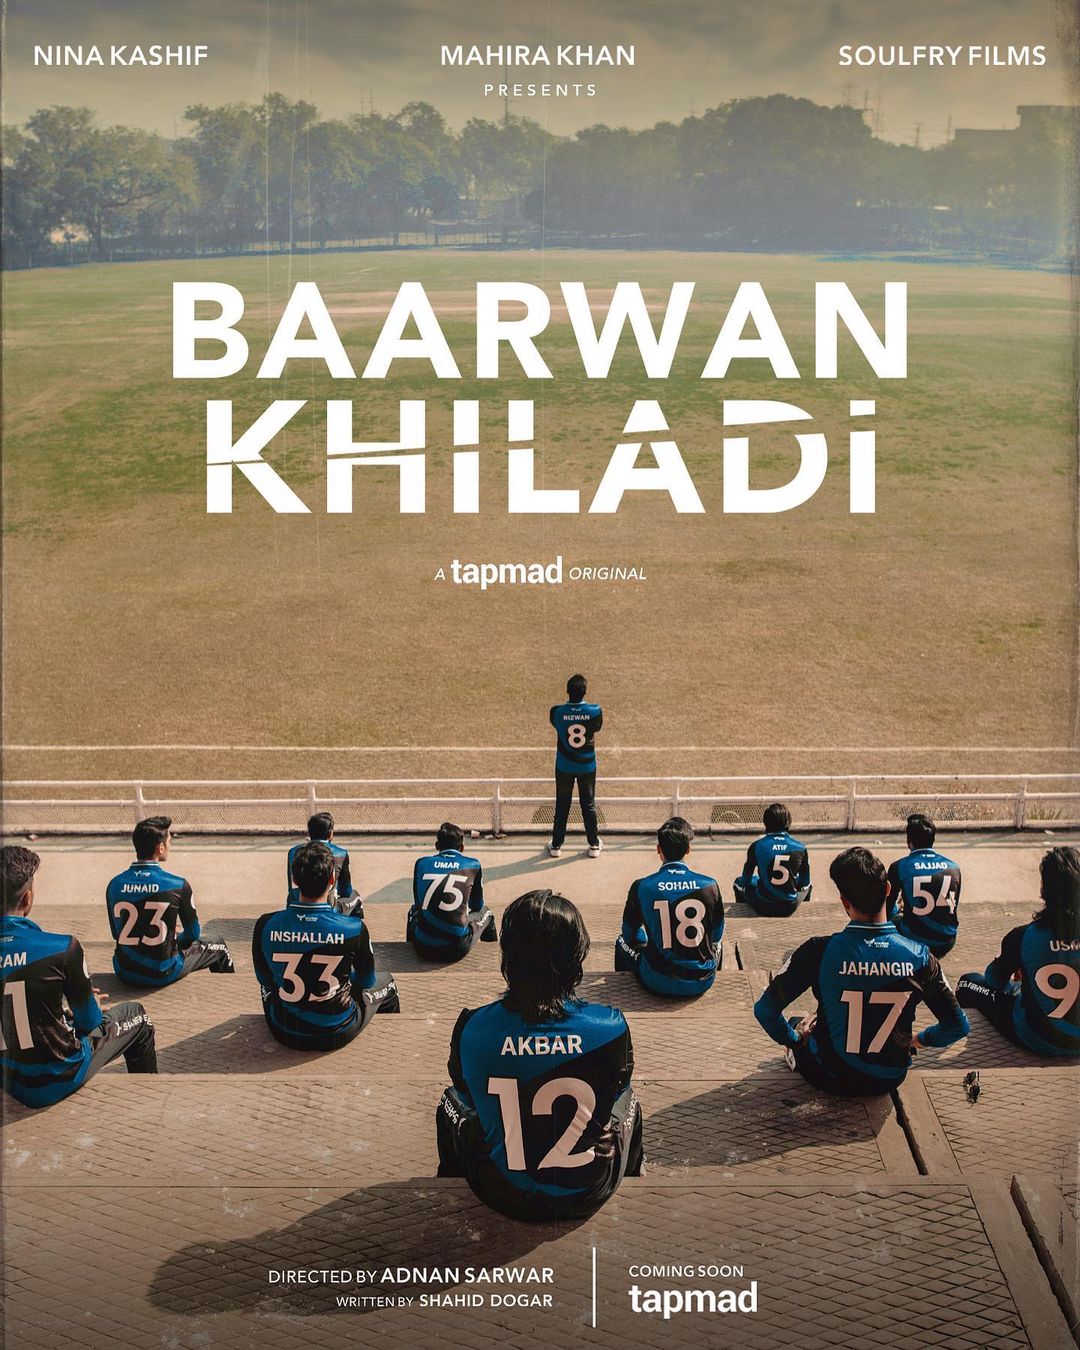 Mahira Khan To Make Debut In Production with "Baarwan Khiladi"